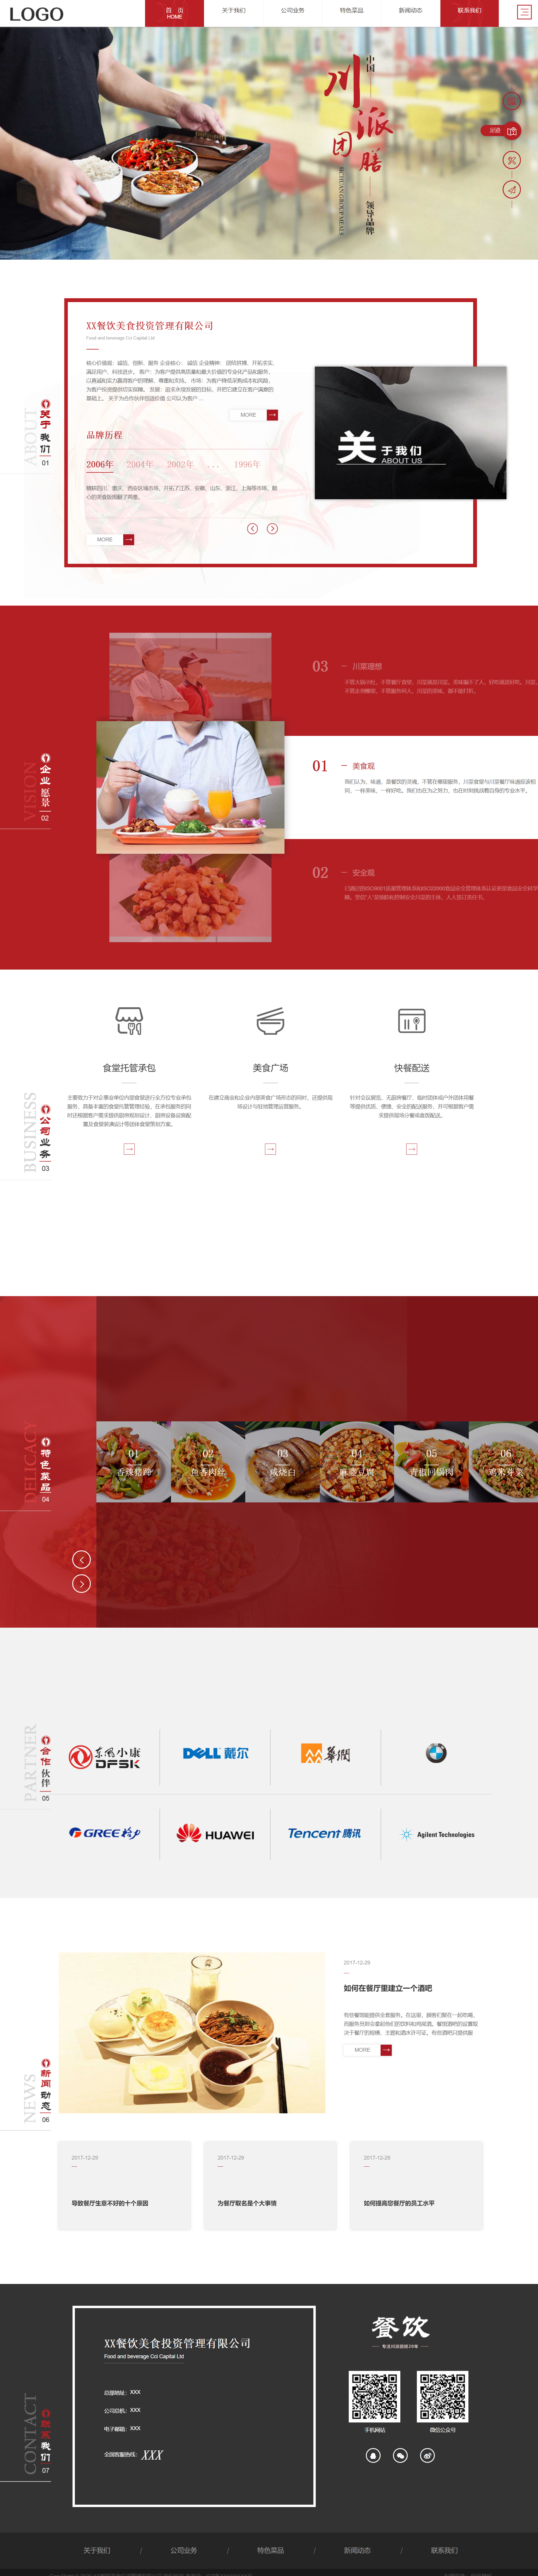 红色简洁形式pc+wap餐饮投资管理企业网站模板代码